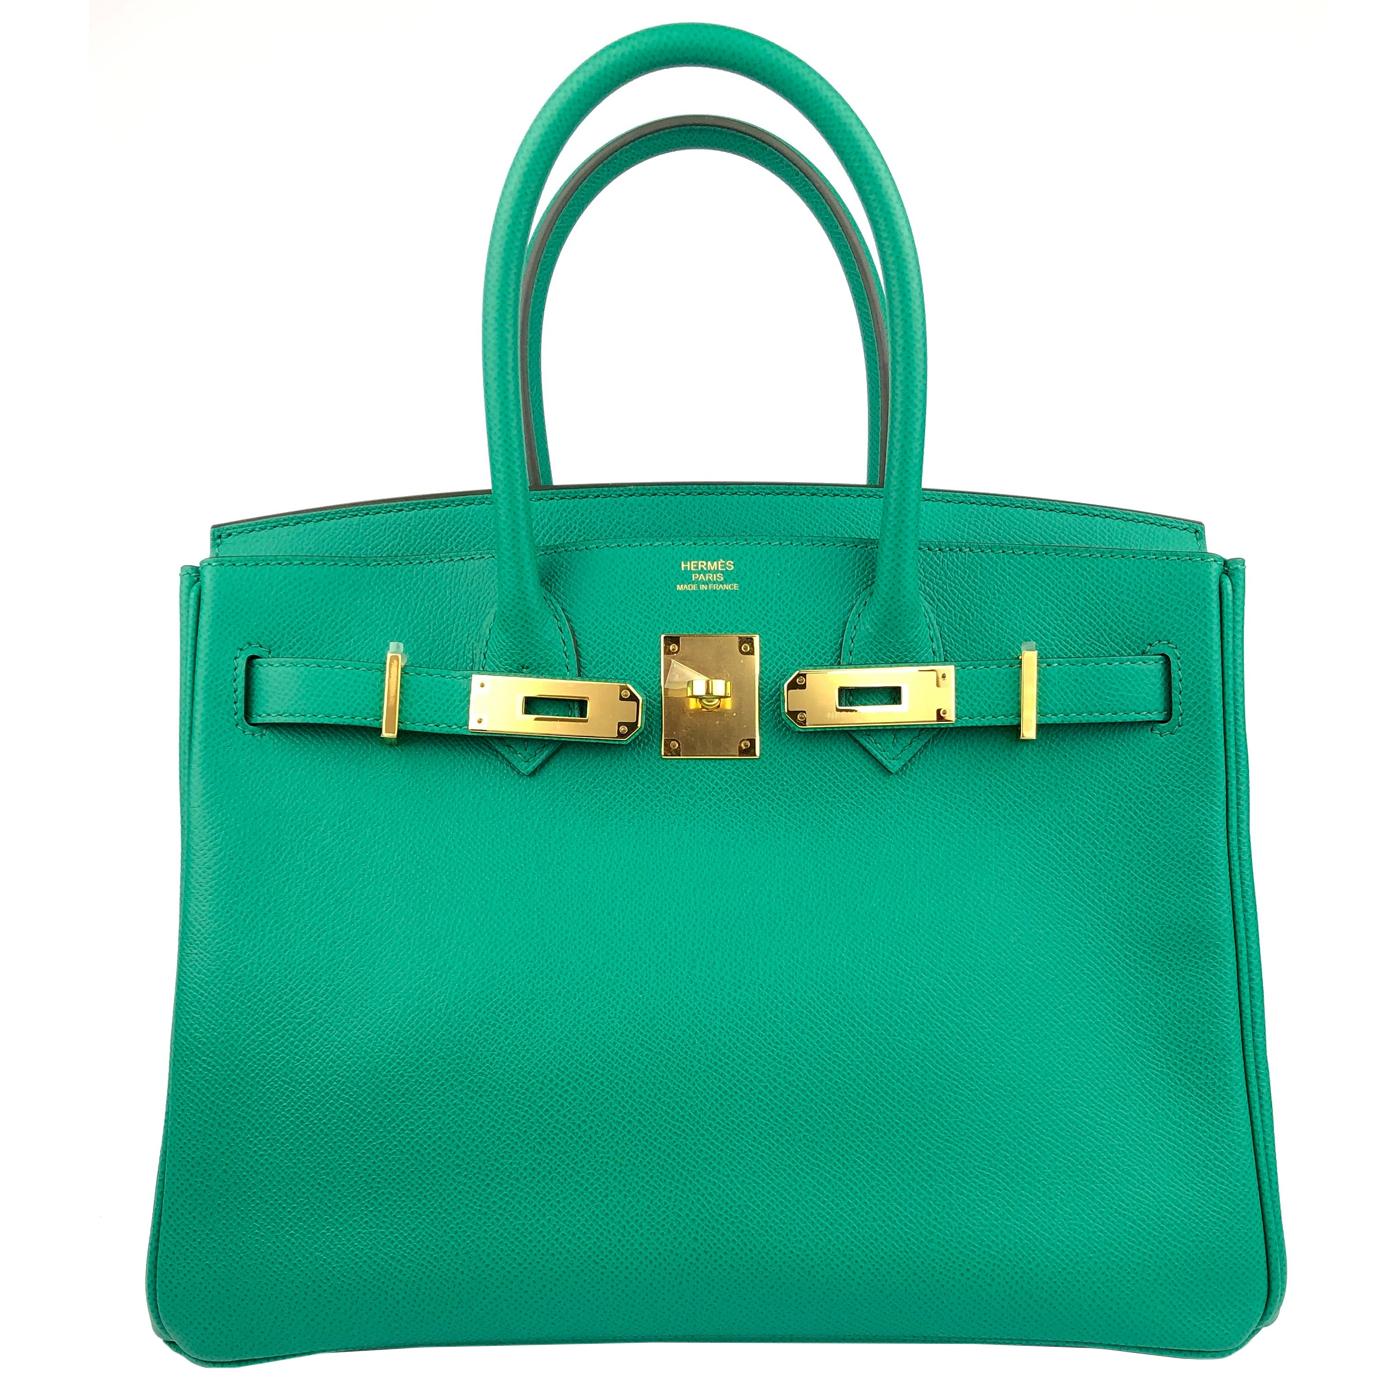 Hermès Birkin 30 Vert Jade Green Epsom With Gold Hardware In New Condition For Sale In Aventura, FL